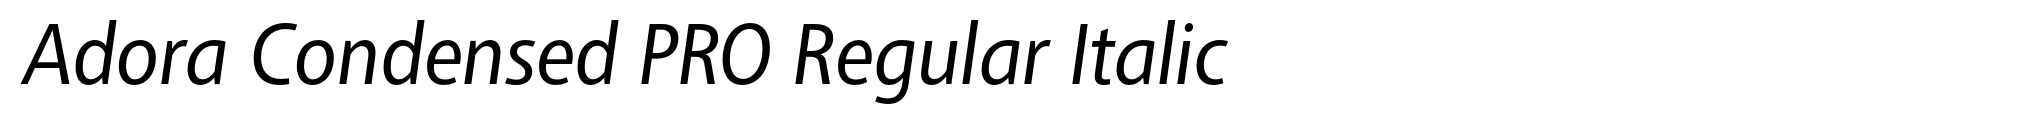 Adora Condensed PRO Regular Italic image